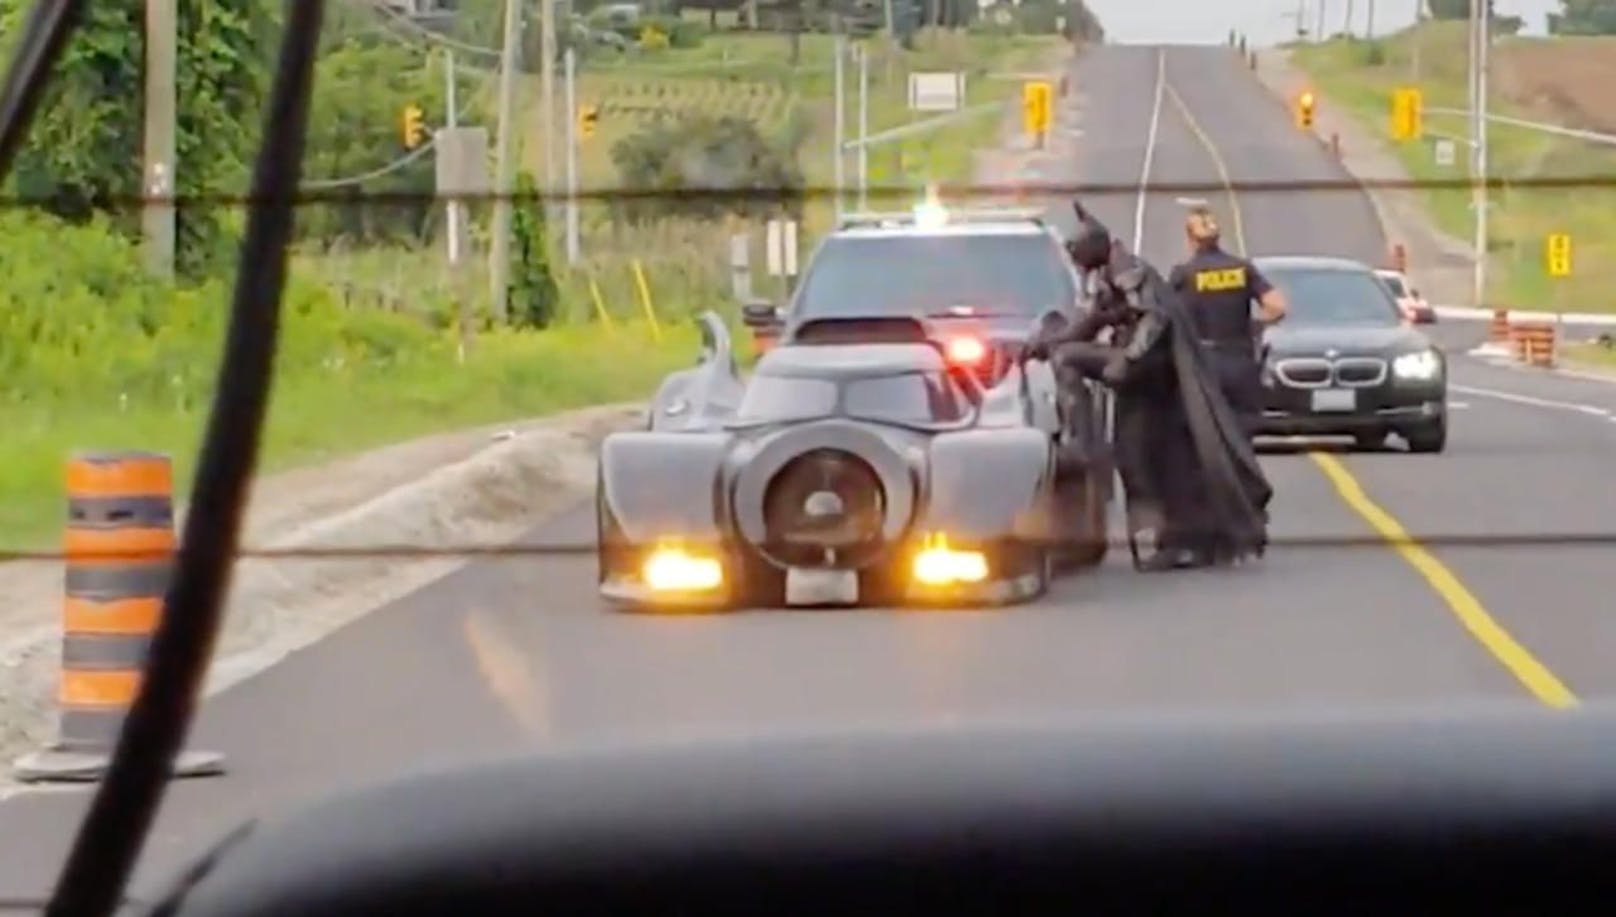 Einsatz beendet, das Gute hat wieder einmal gesiegt: &quot;Batman&quot; springt ins Batmobil, die kanadische Polizei zieht ab. 